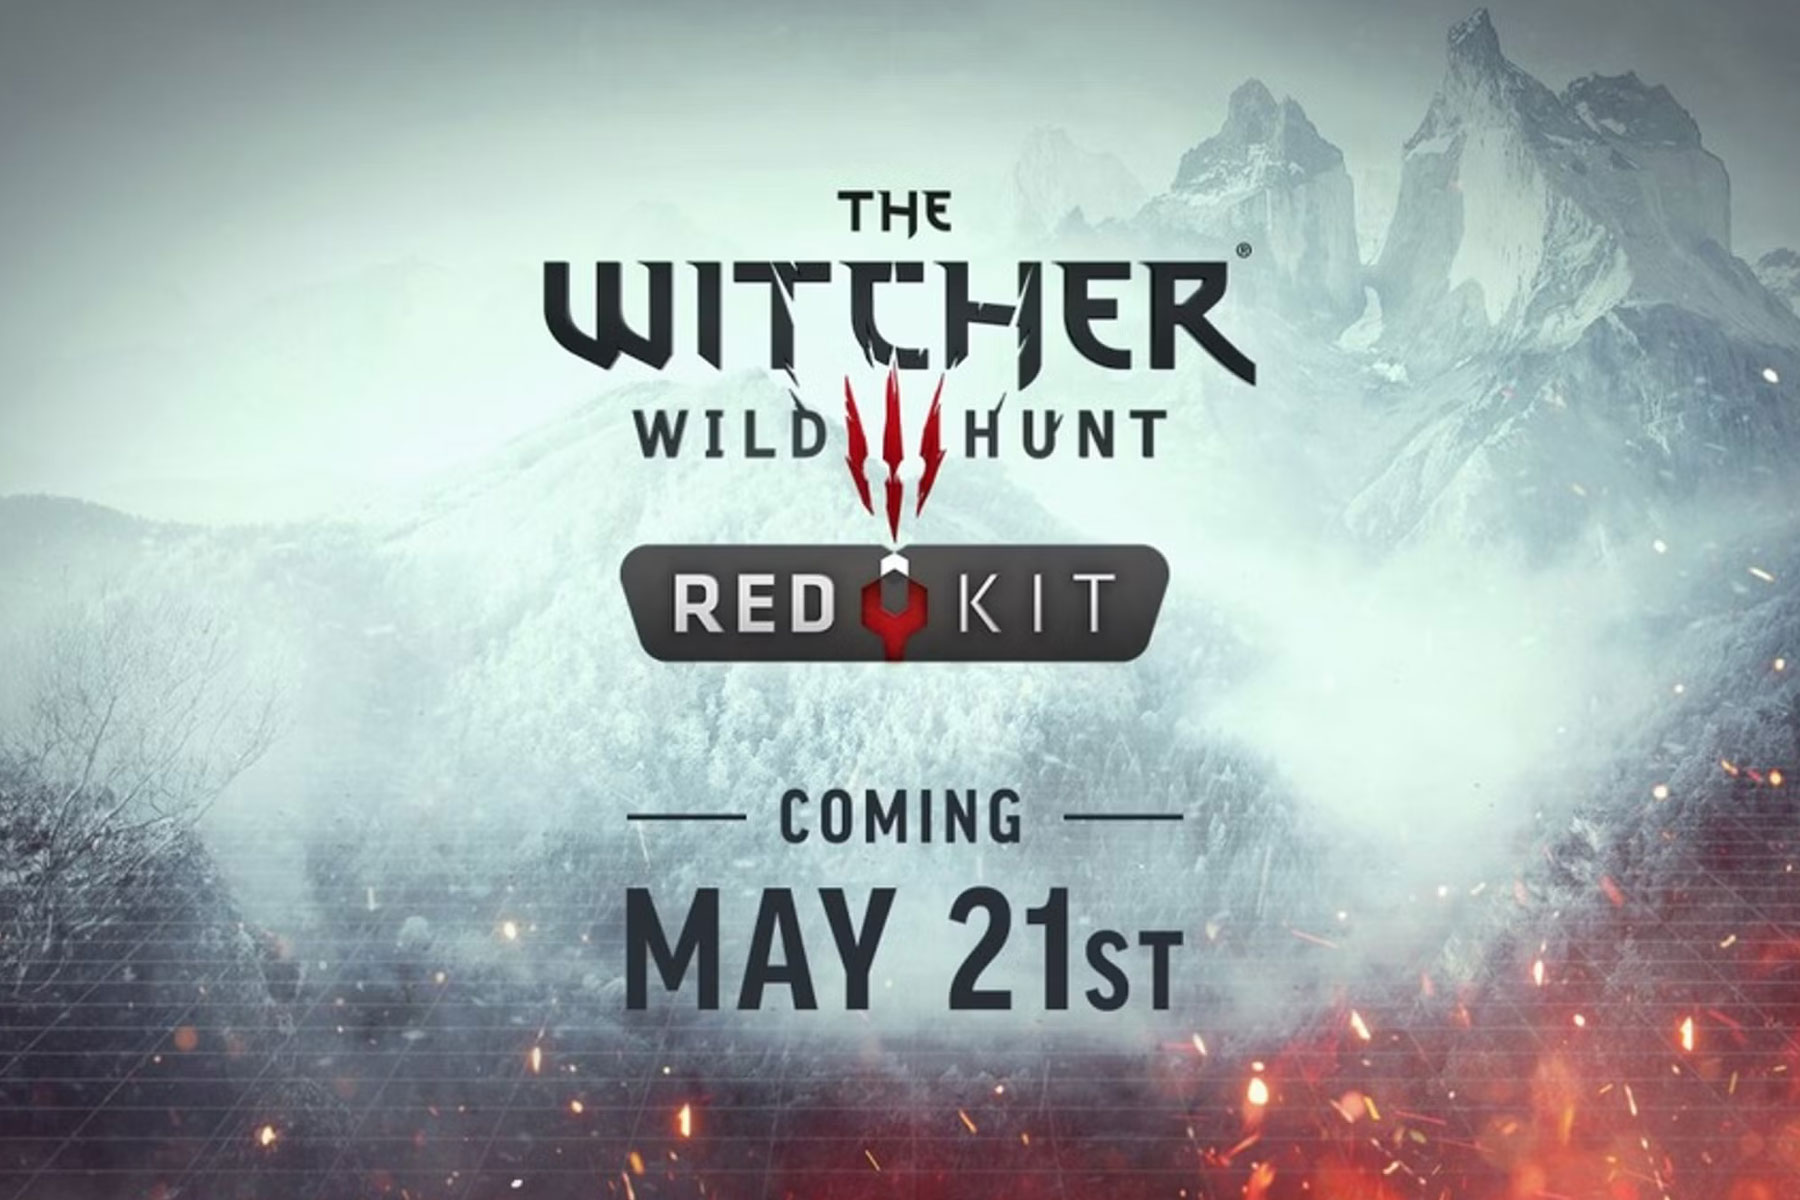 Witcher 3 REDkit tool